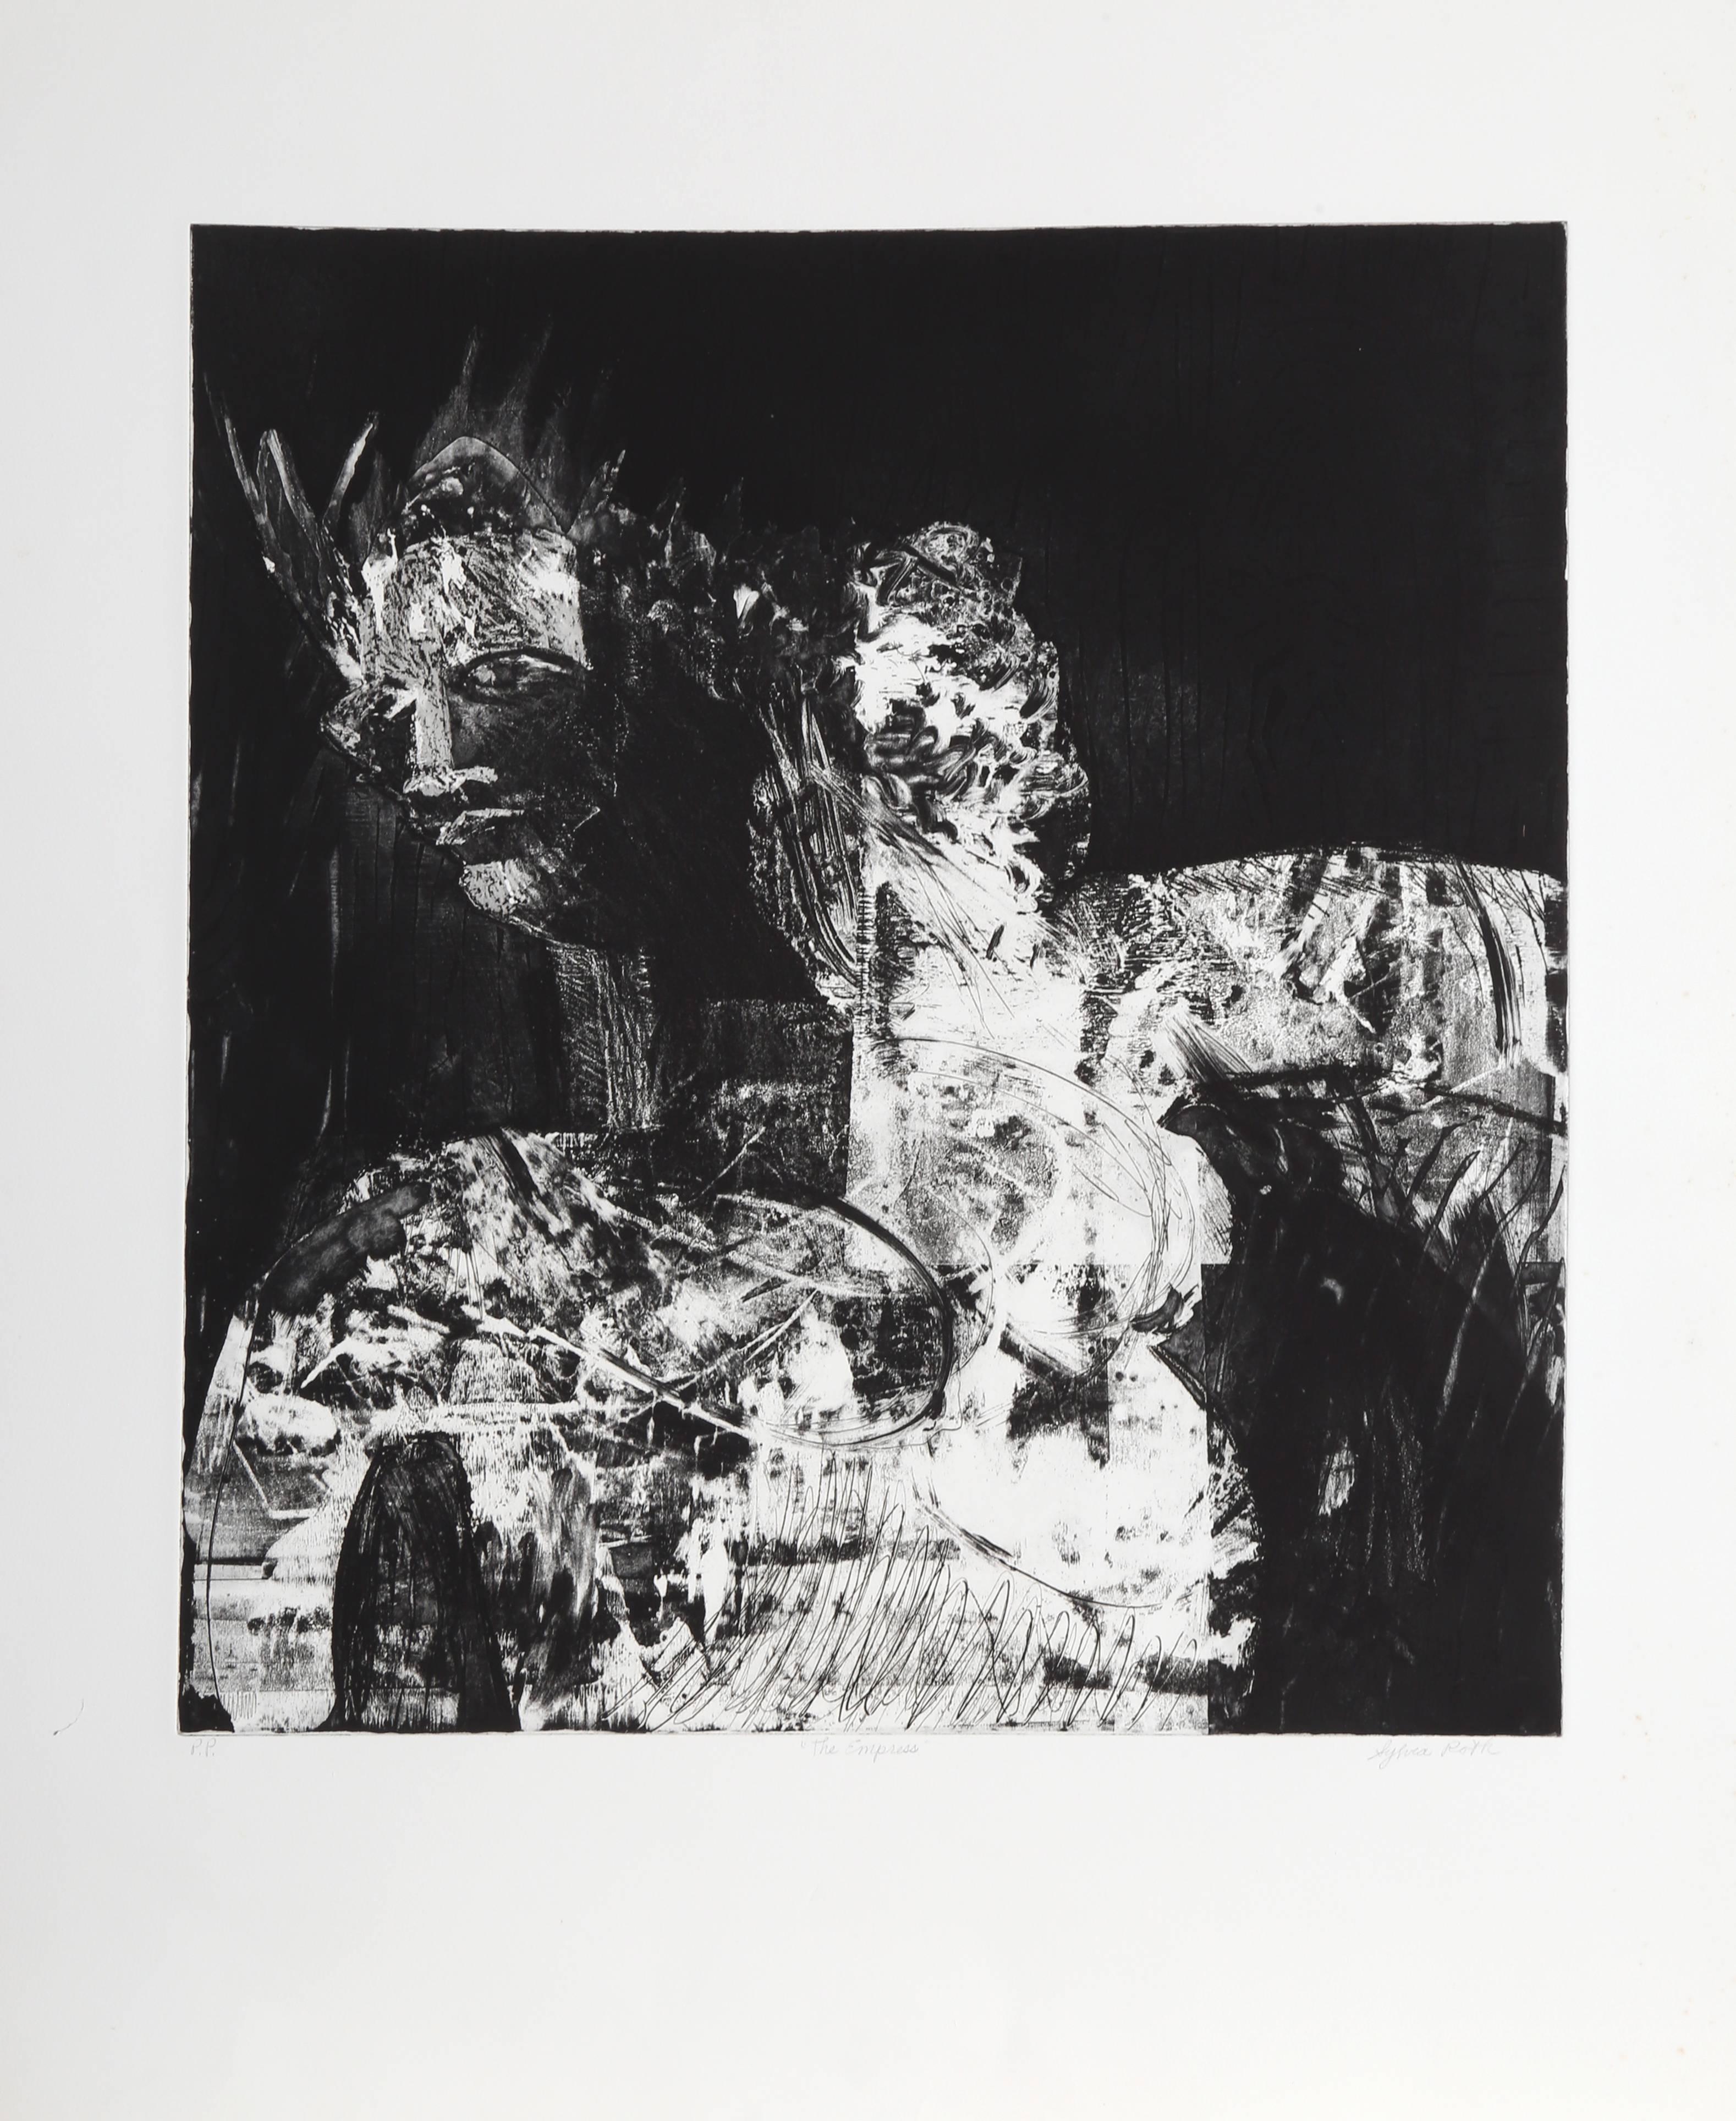 Künstlerin: Sylvia Roth
Titel: Die Kaiserin
Jahr: um 1980
Medium: Radierung mit Aquatinta, mit Bleistift signiert und nummeriert
Auflage: PP
Bildgröße: 23,5 x 22 Zoll
Größe: 34 x 28,5 Zoll